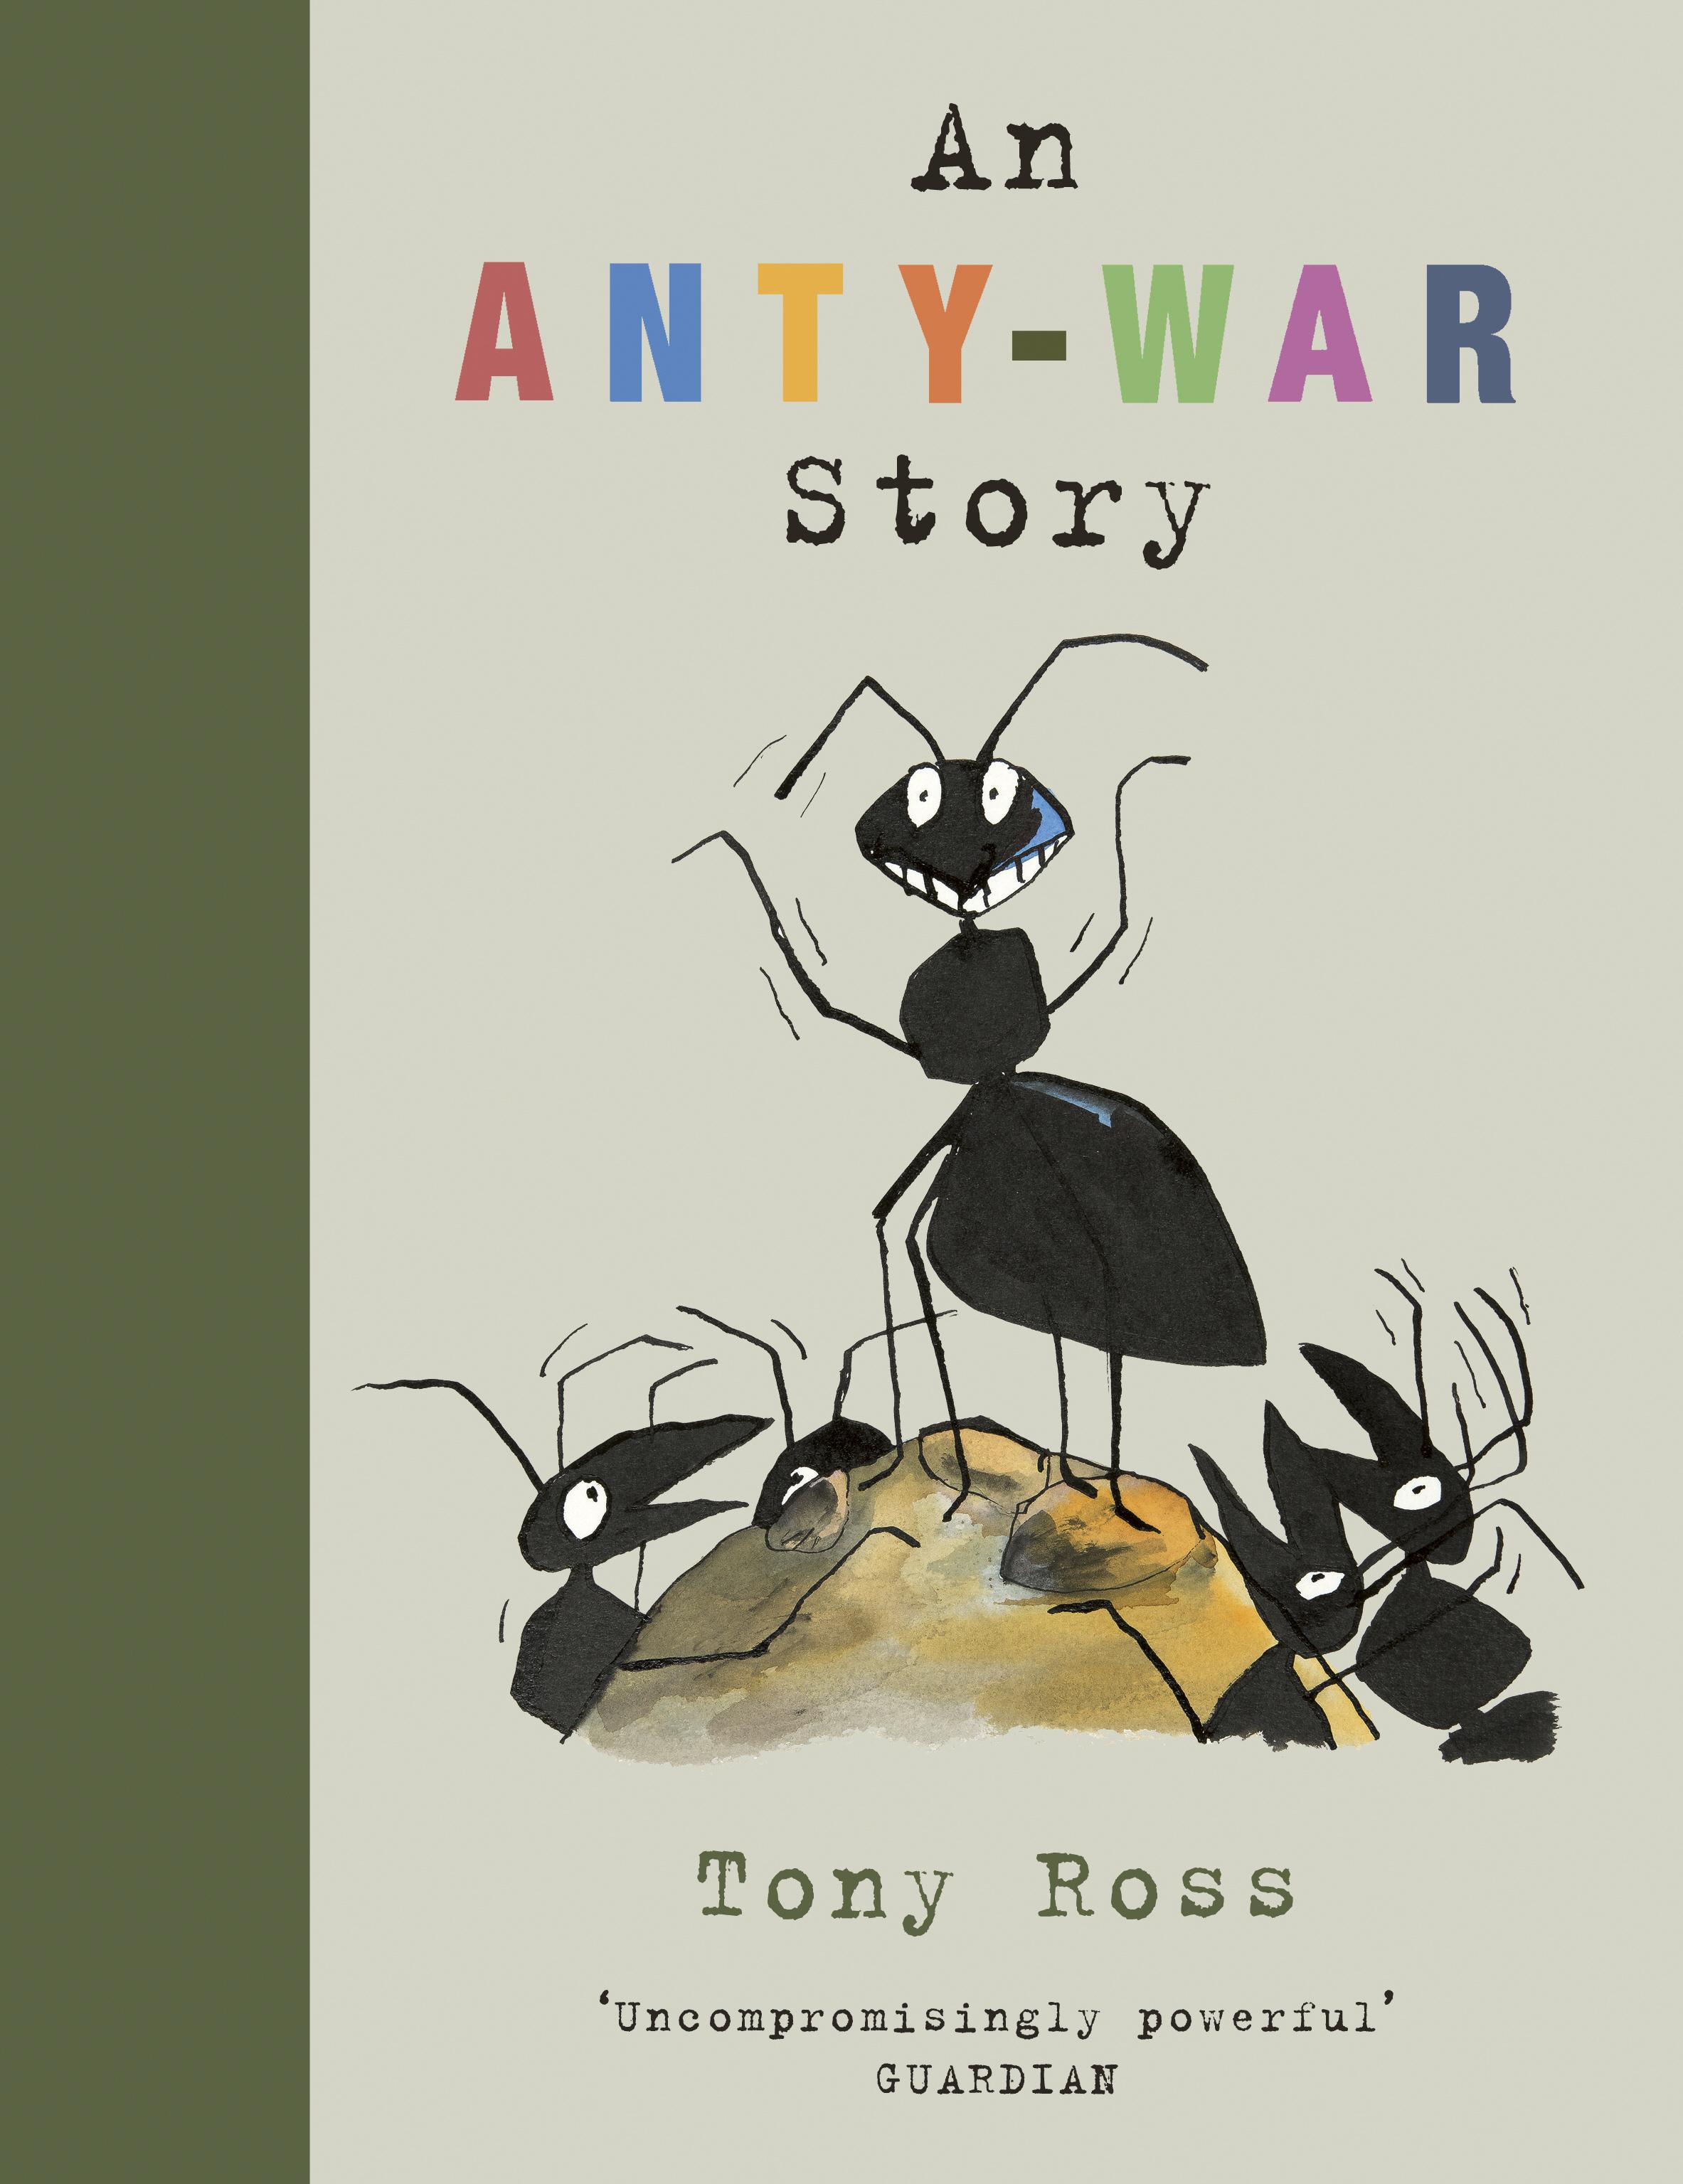 Anty-War Story - Tony Ross